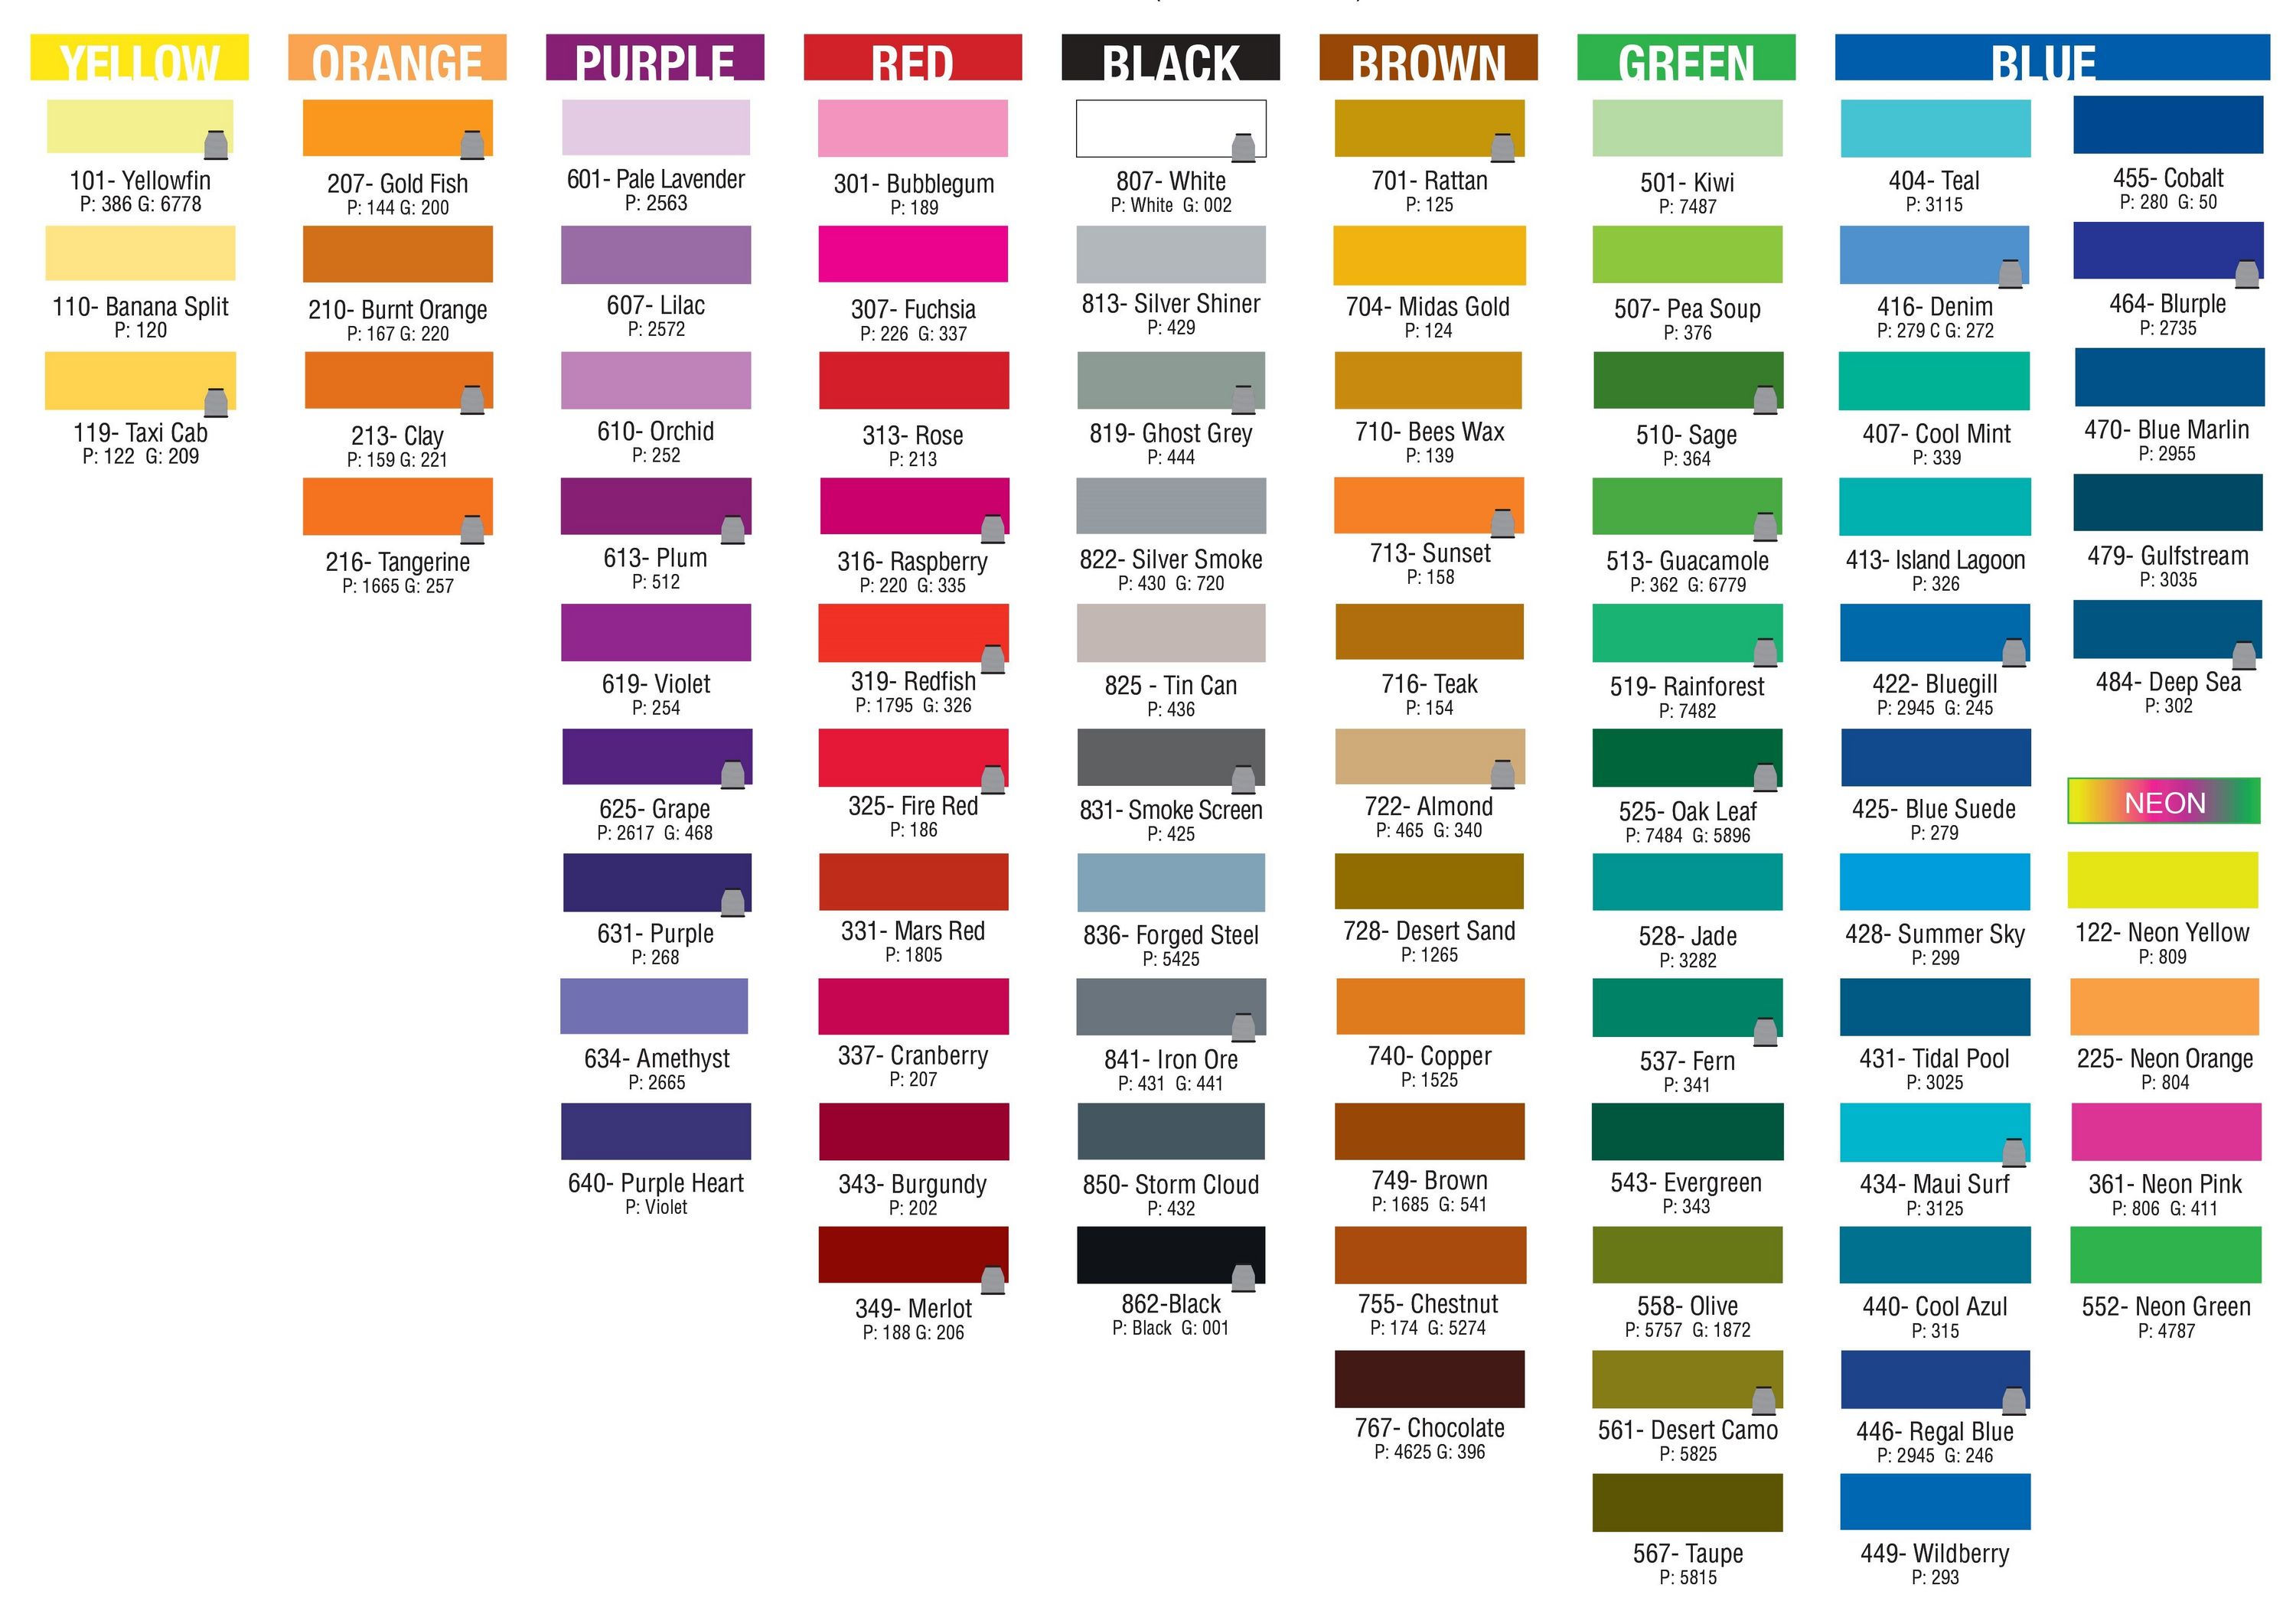 Fishhawk Thread Color Chart